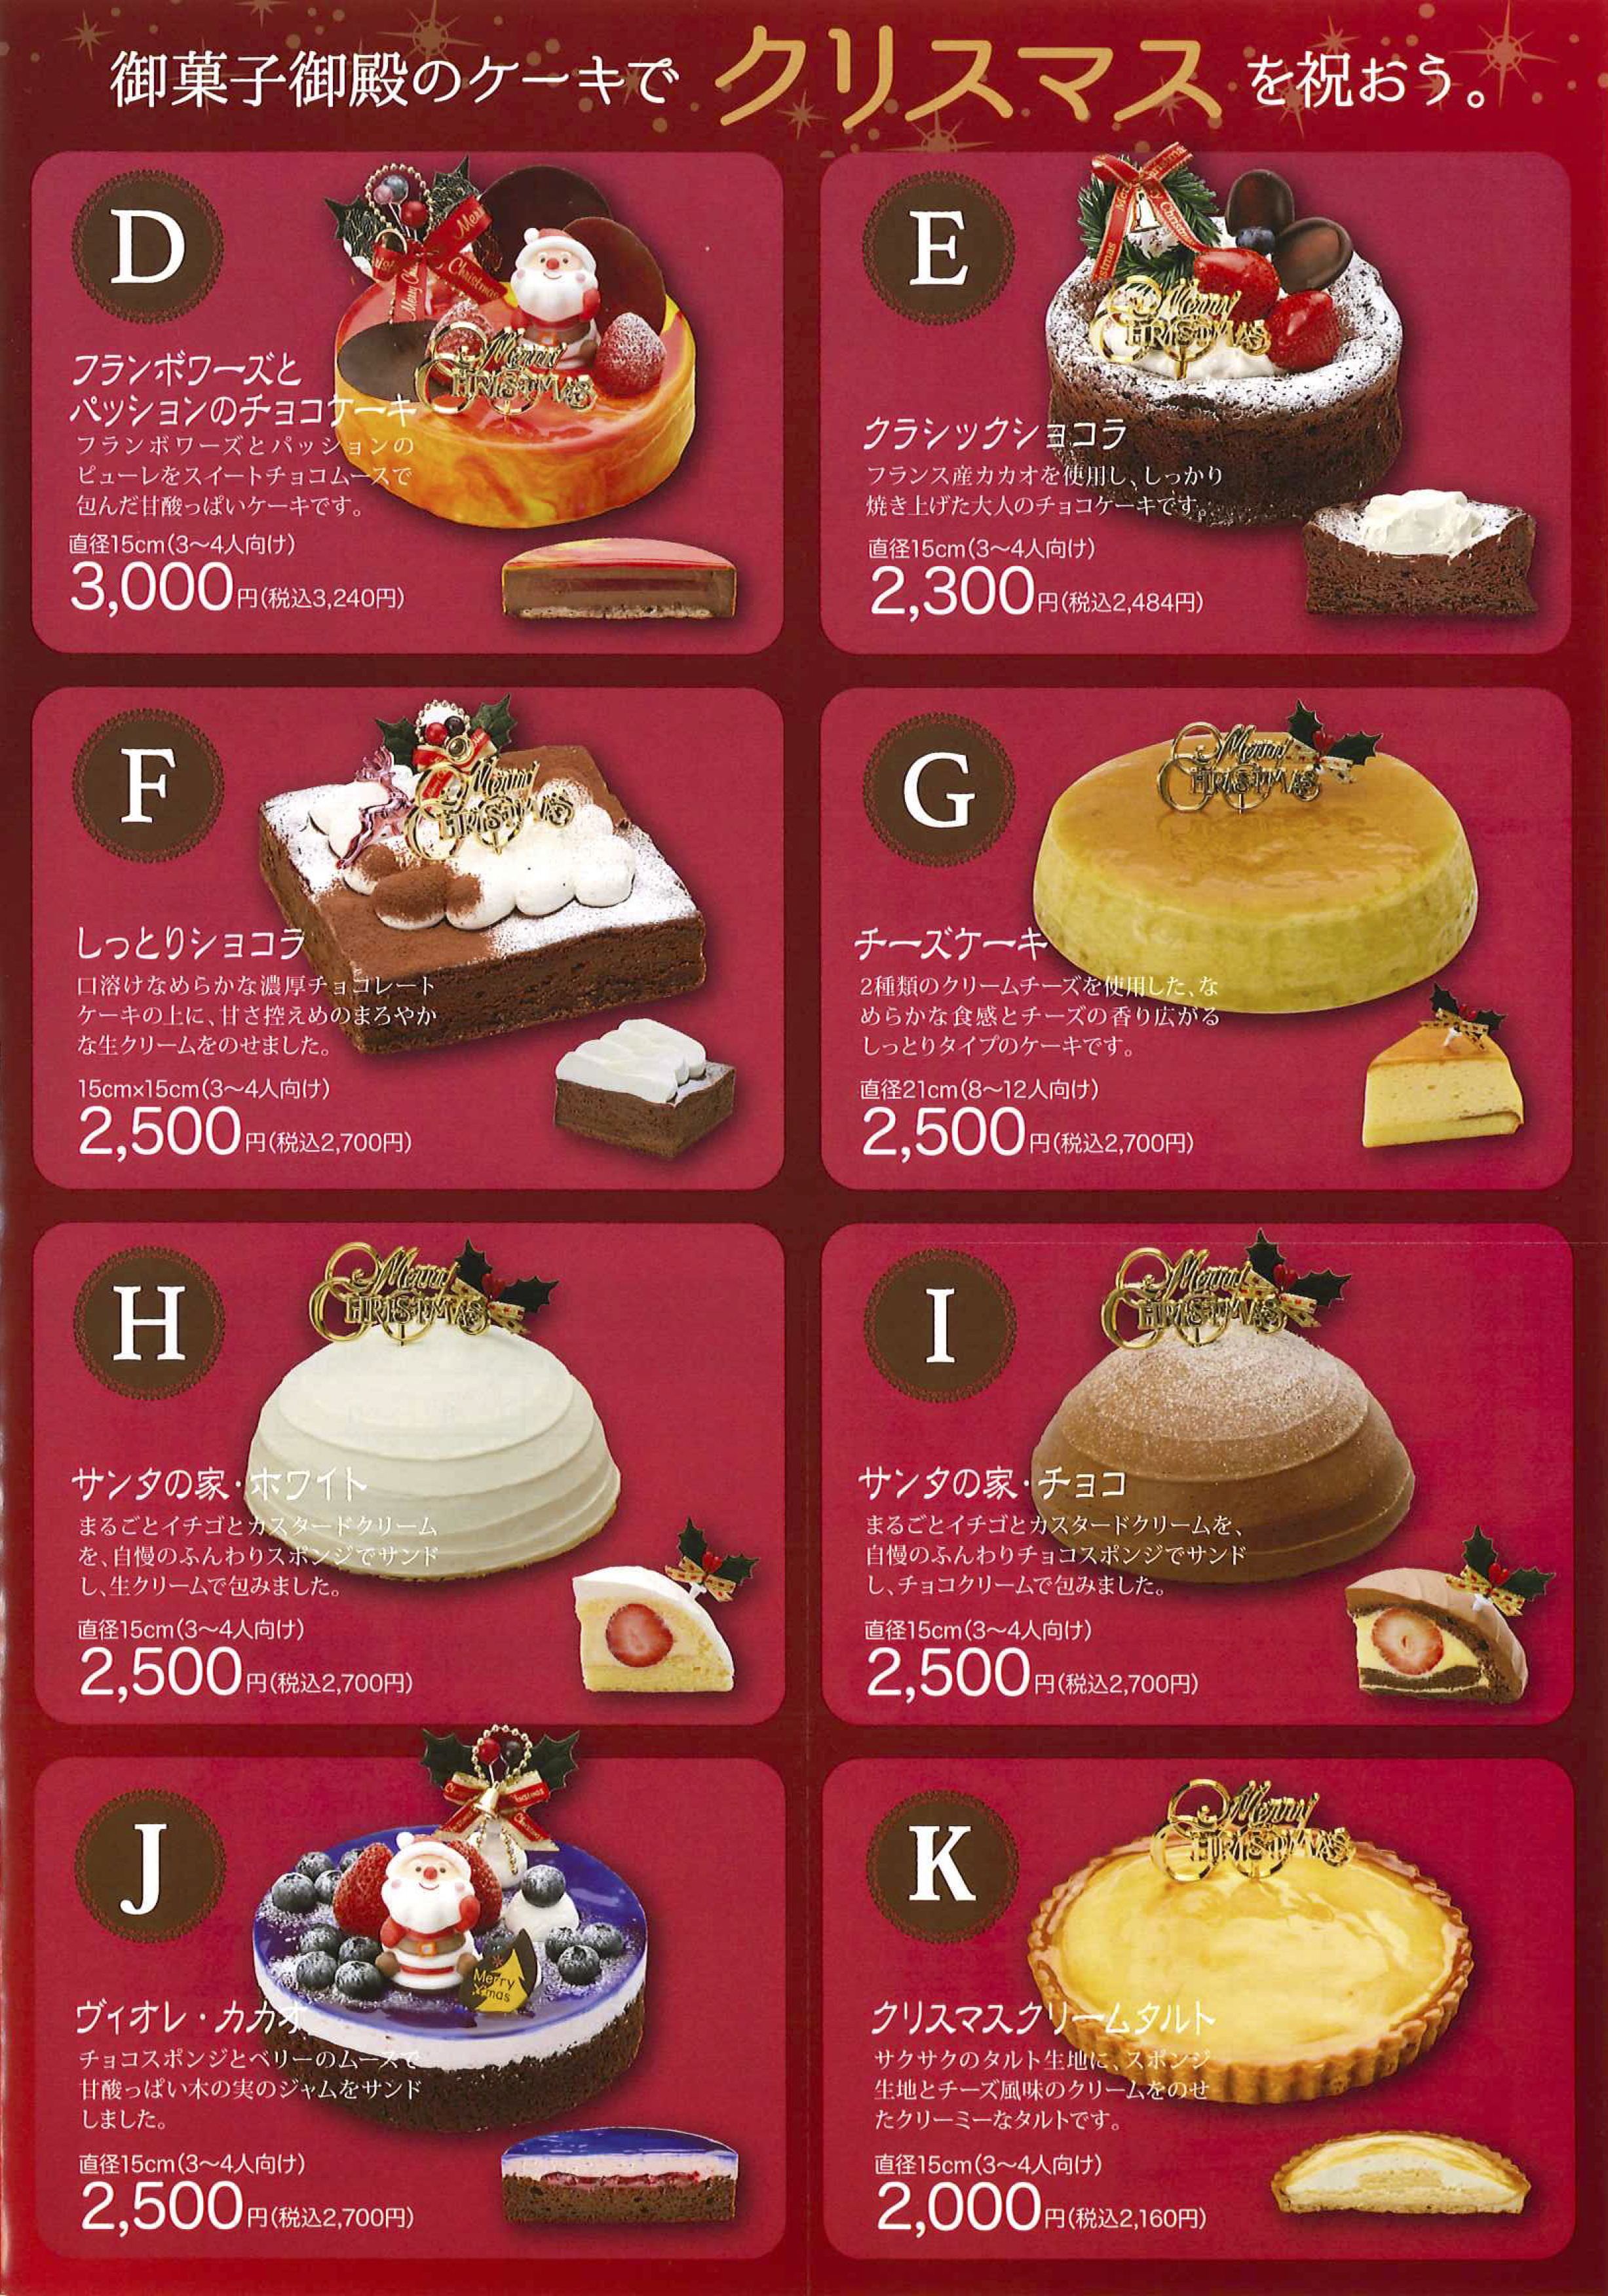 御菓子御殿 クリスマスケーキカタログ17p3 沖縄のお土産 元祖 紅いもタルト 御菓子御殿 公式